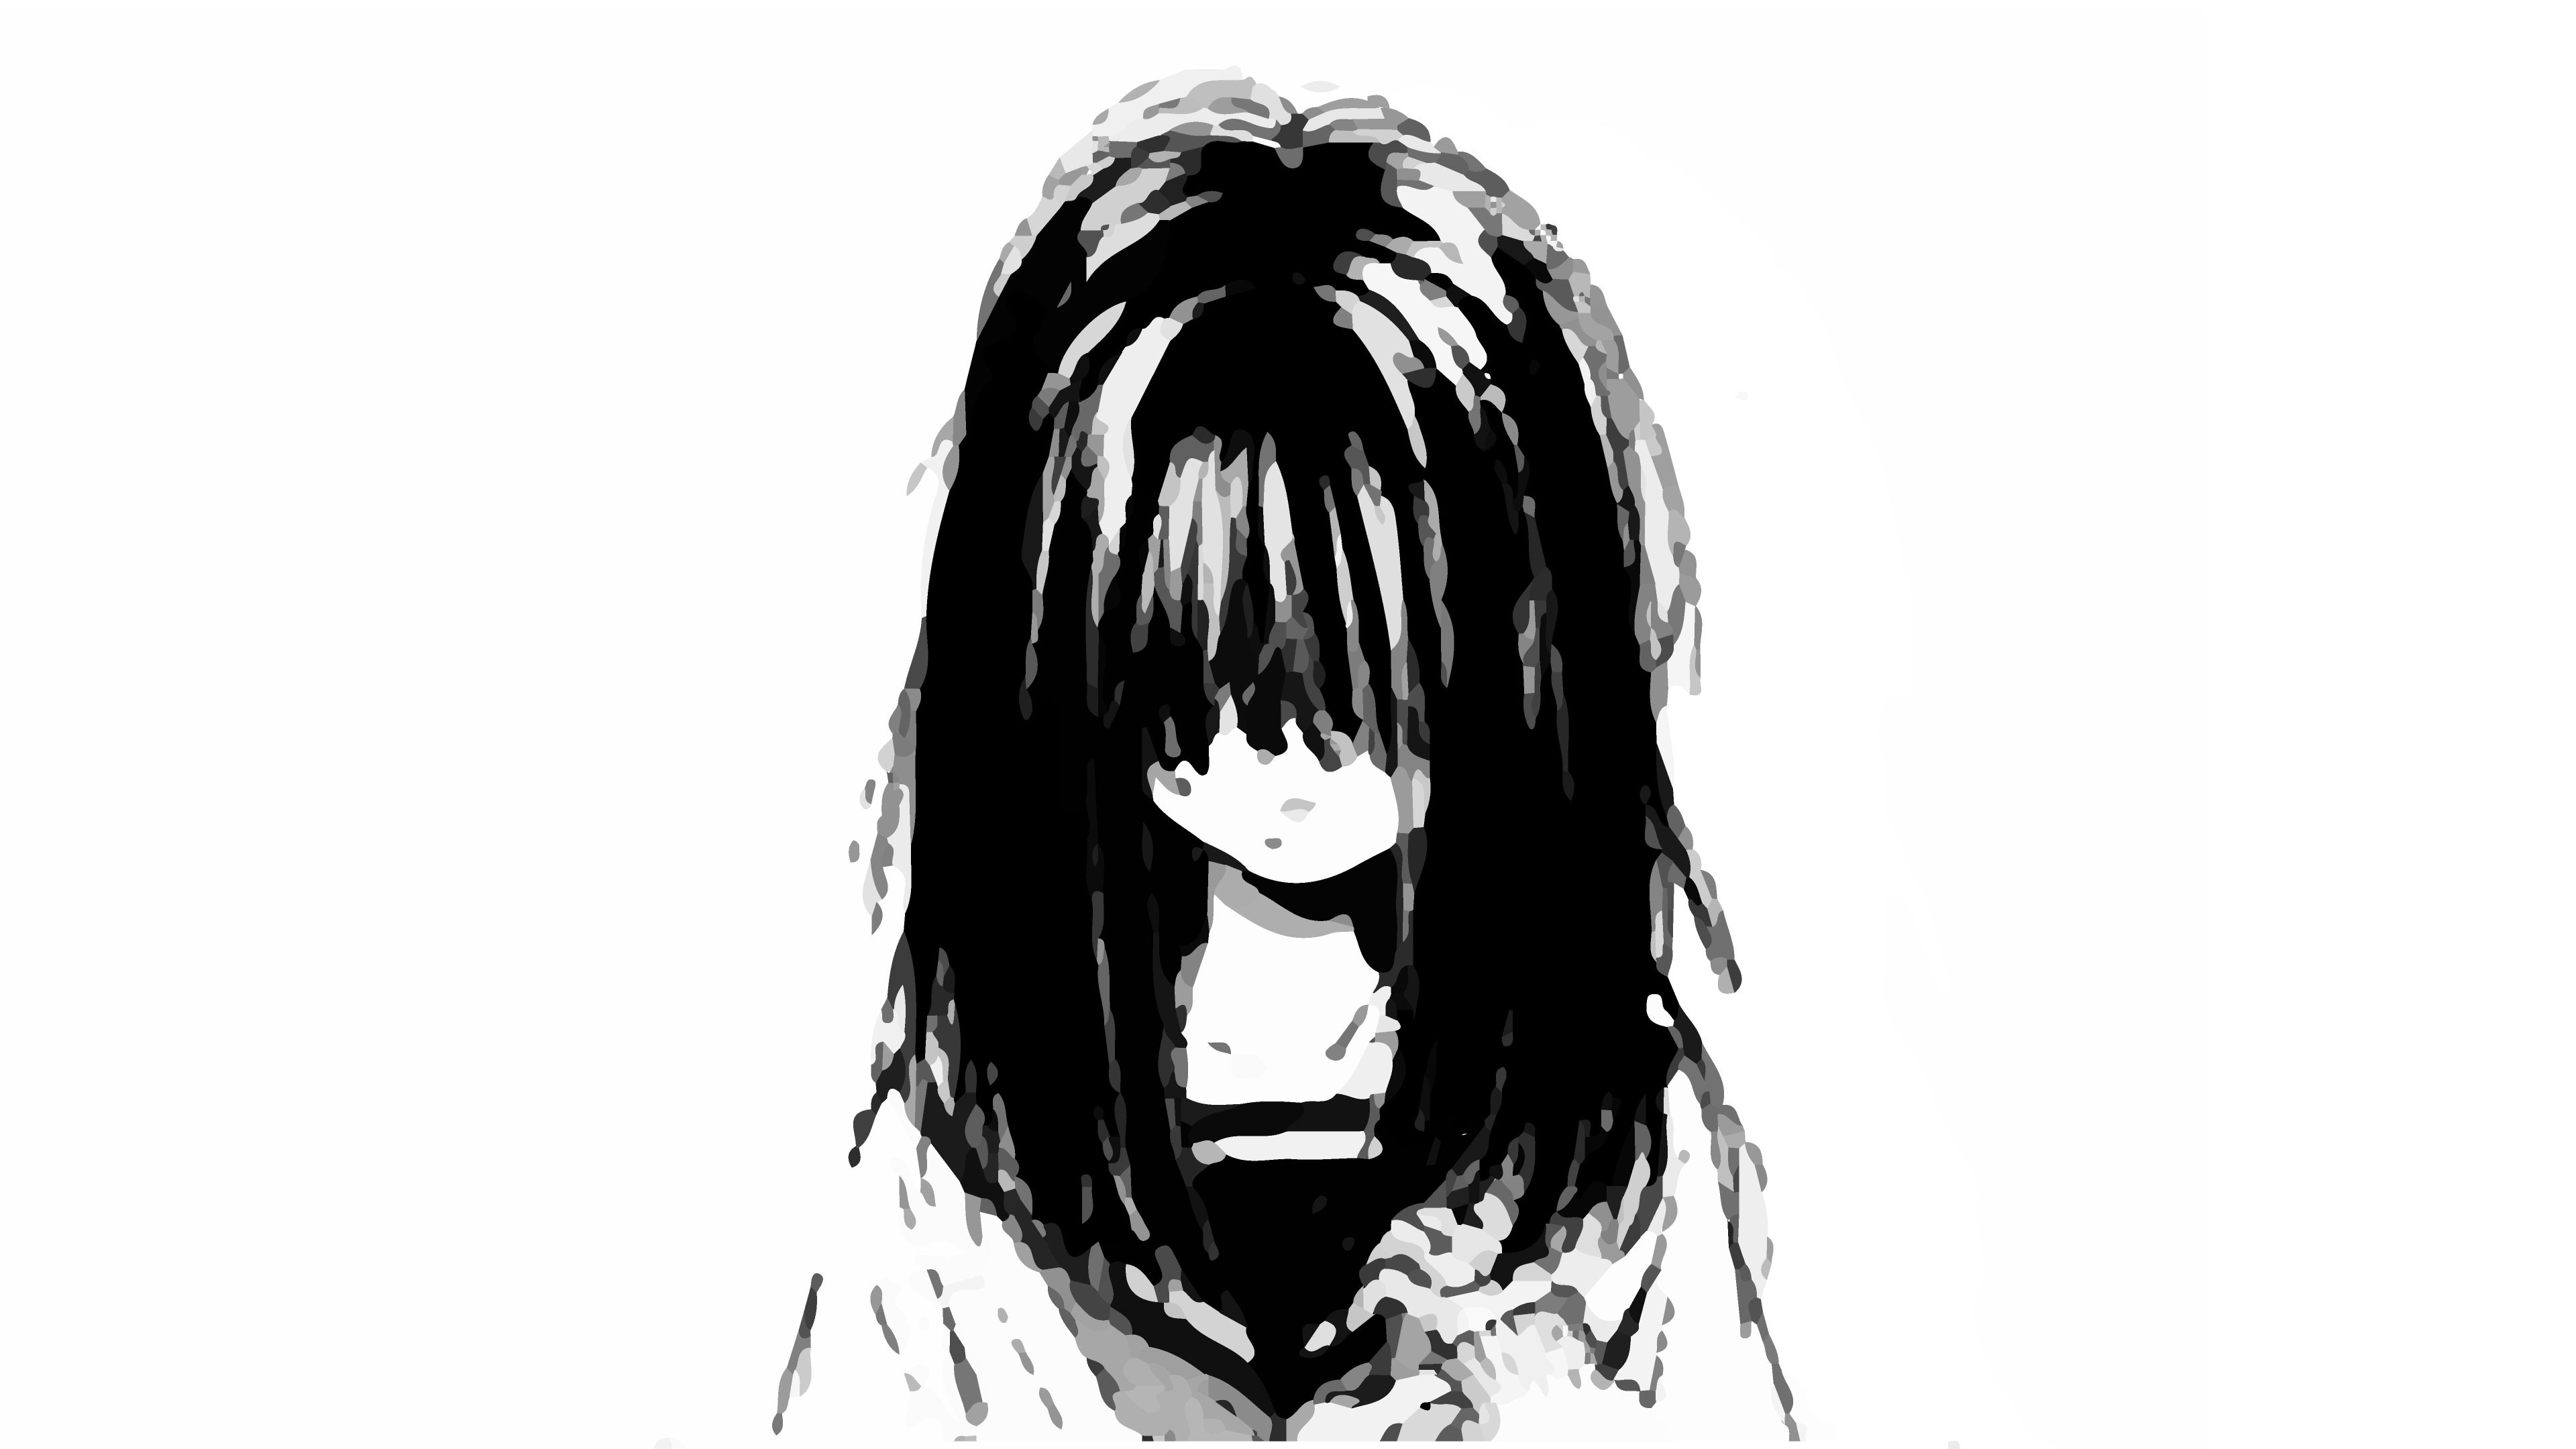 Higehiro Yoshida Anime Crying GIF | GIFDB.com